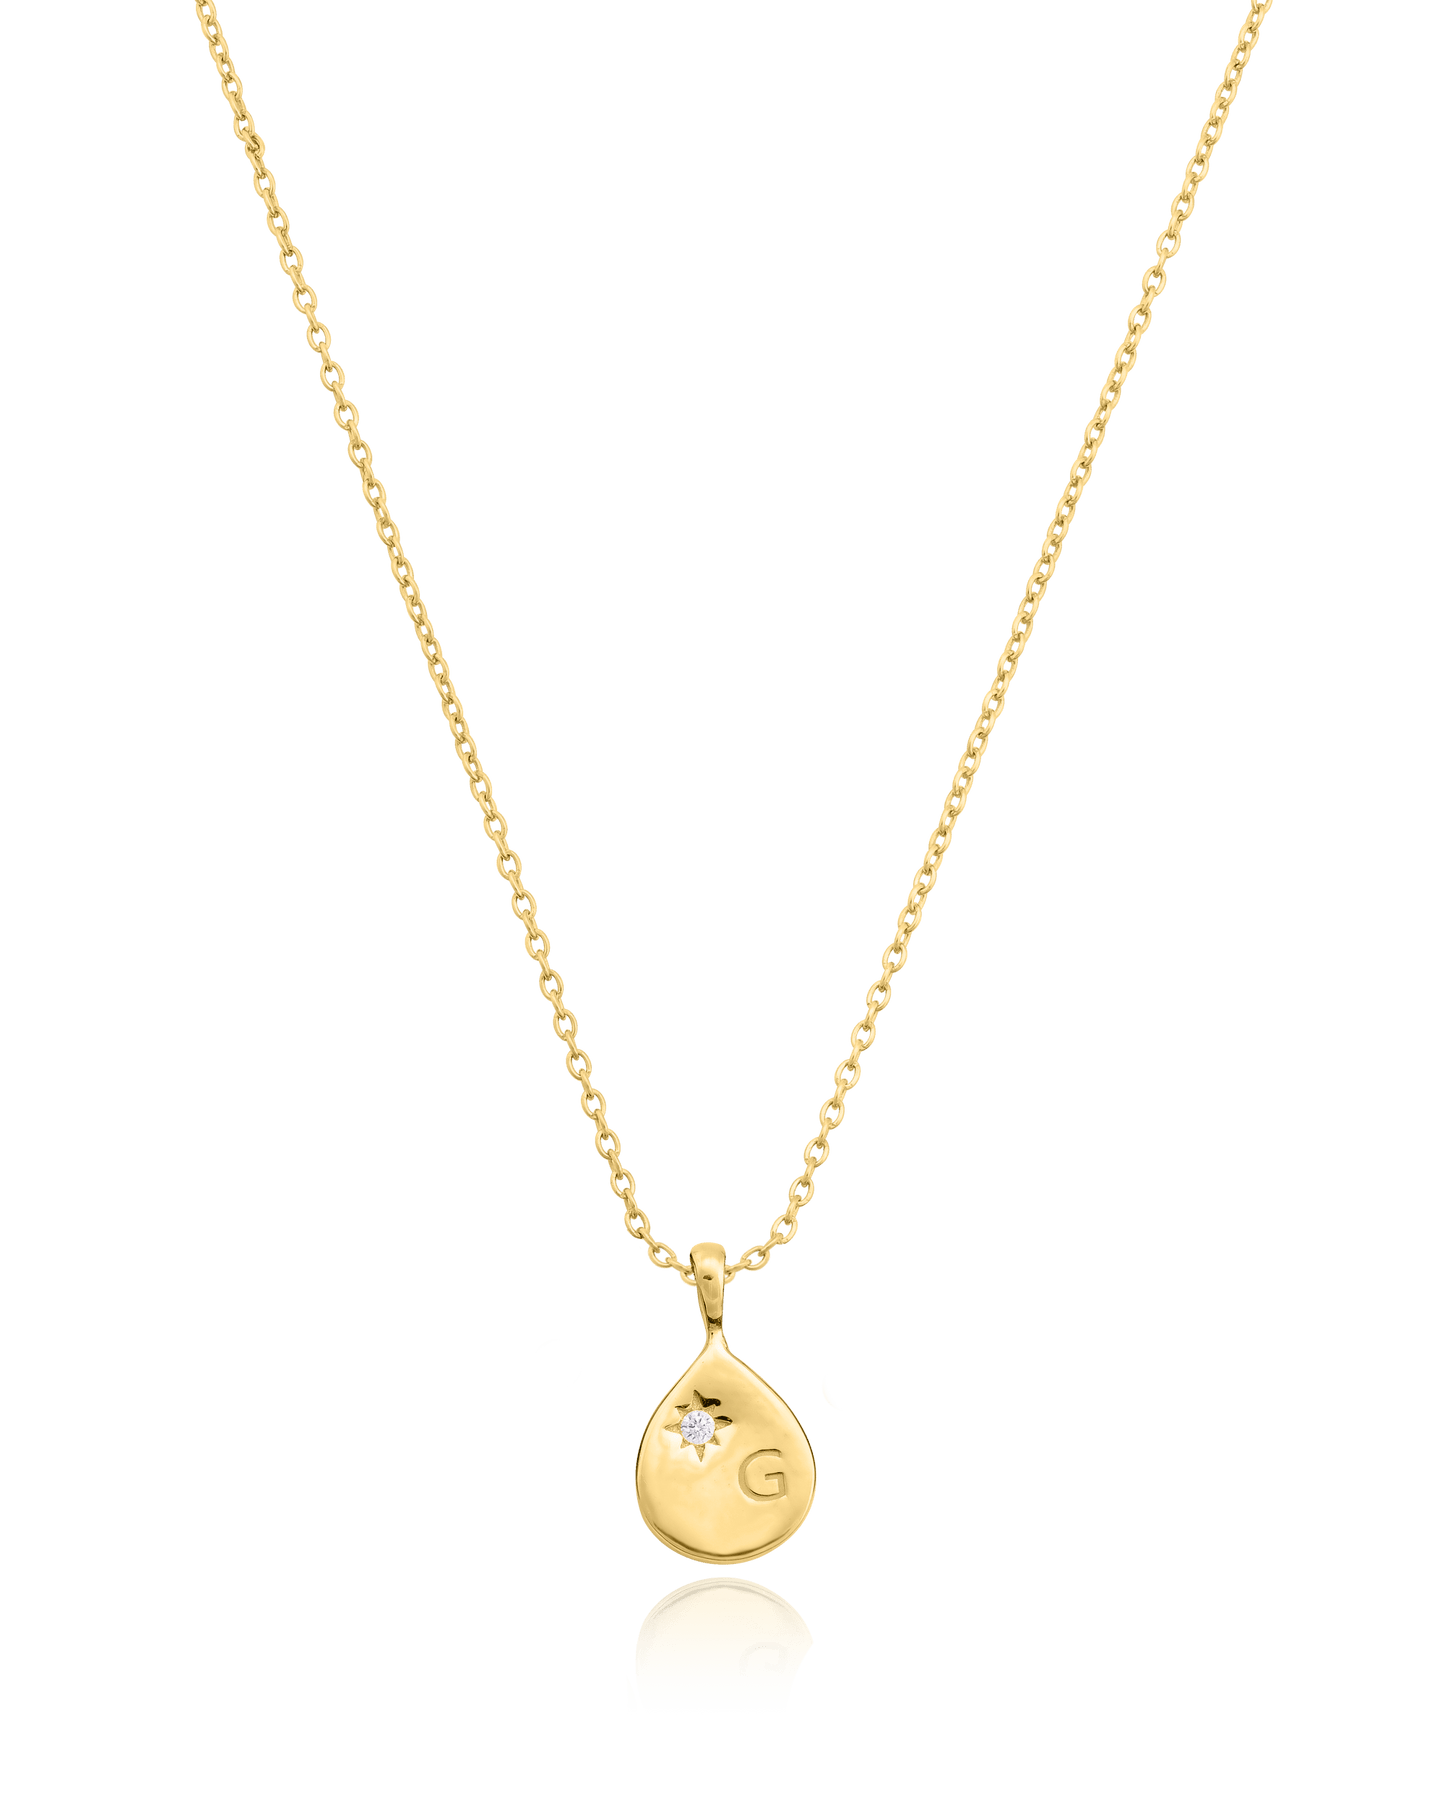 Diamond Drop Initial Necklace - 18K Gold Vermeil Necklaces magal-dev 1 Drop 16”+2” extender 